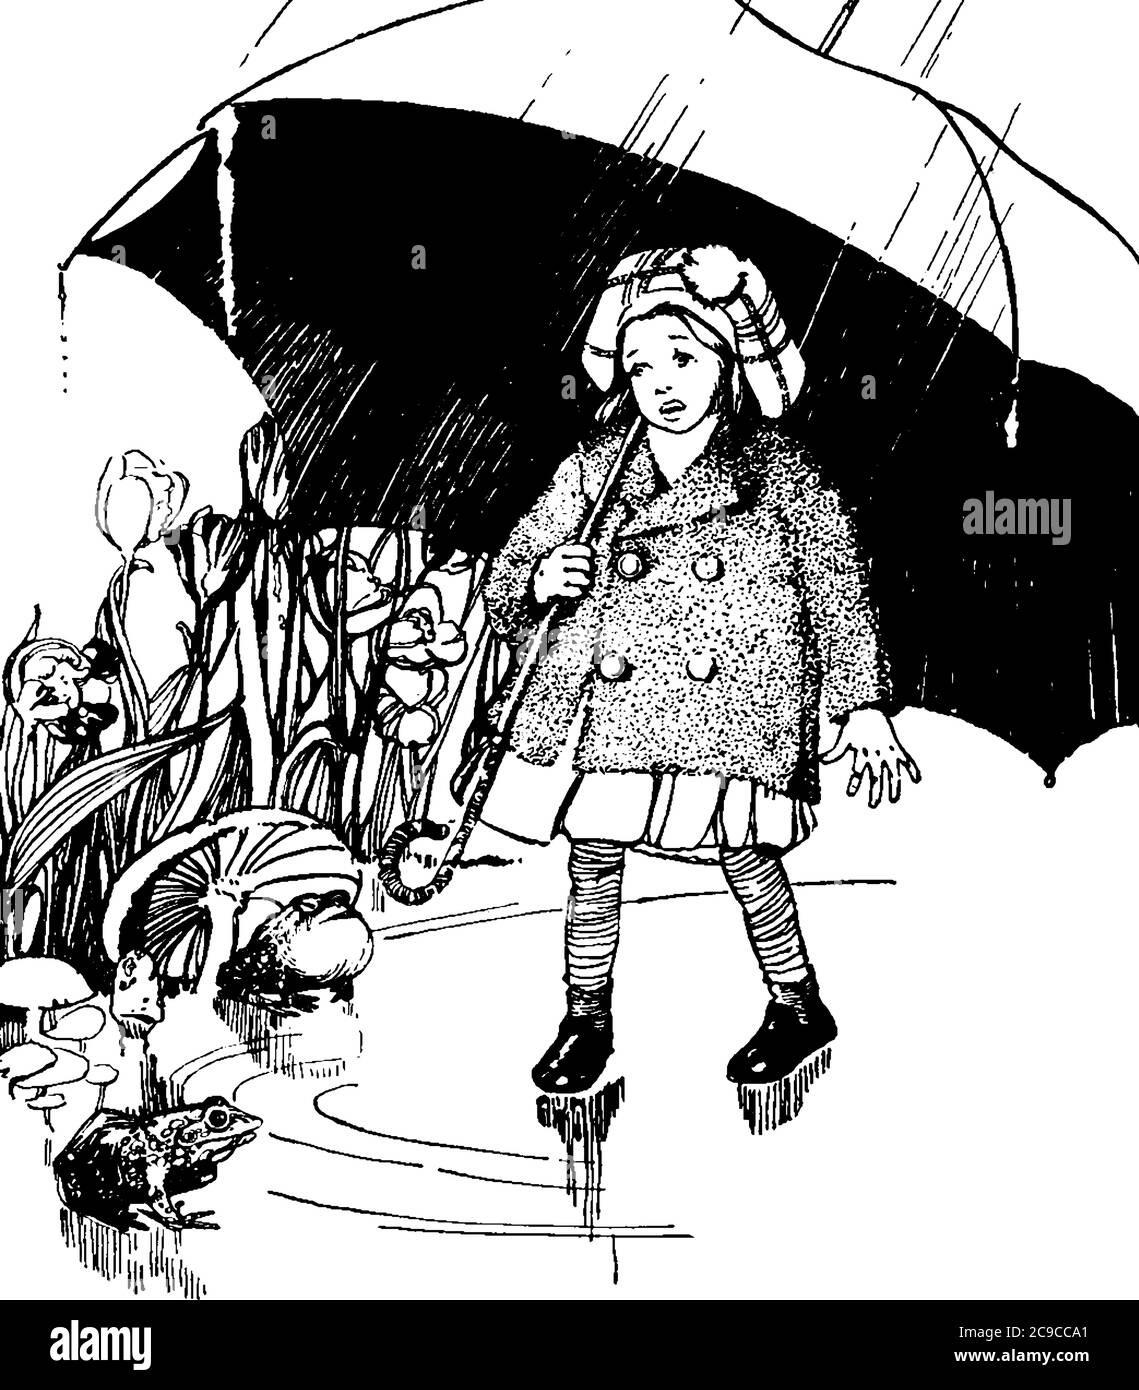 Ein kleines Mädchen zu Fuß in den Wegen des Feldes, unter einem Regenschirm, vintage Linie Zeichnung oder Gravur Illustration. Stock Vektor